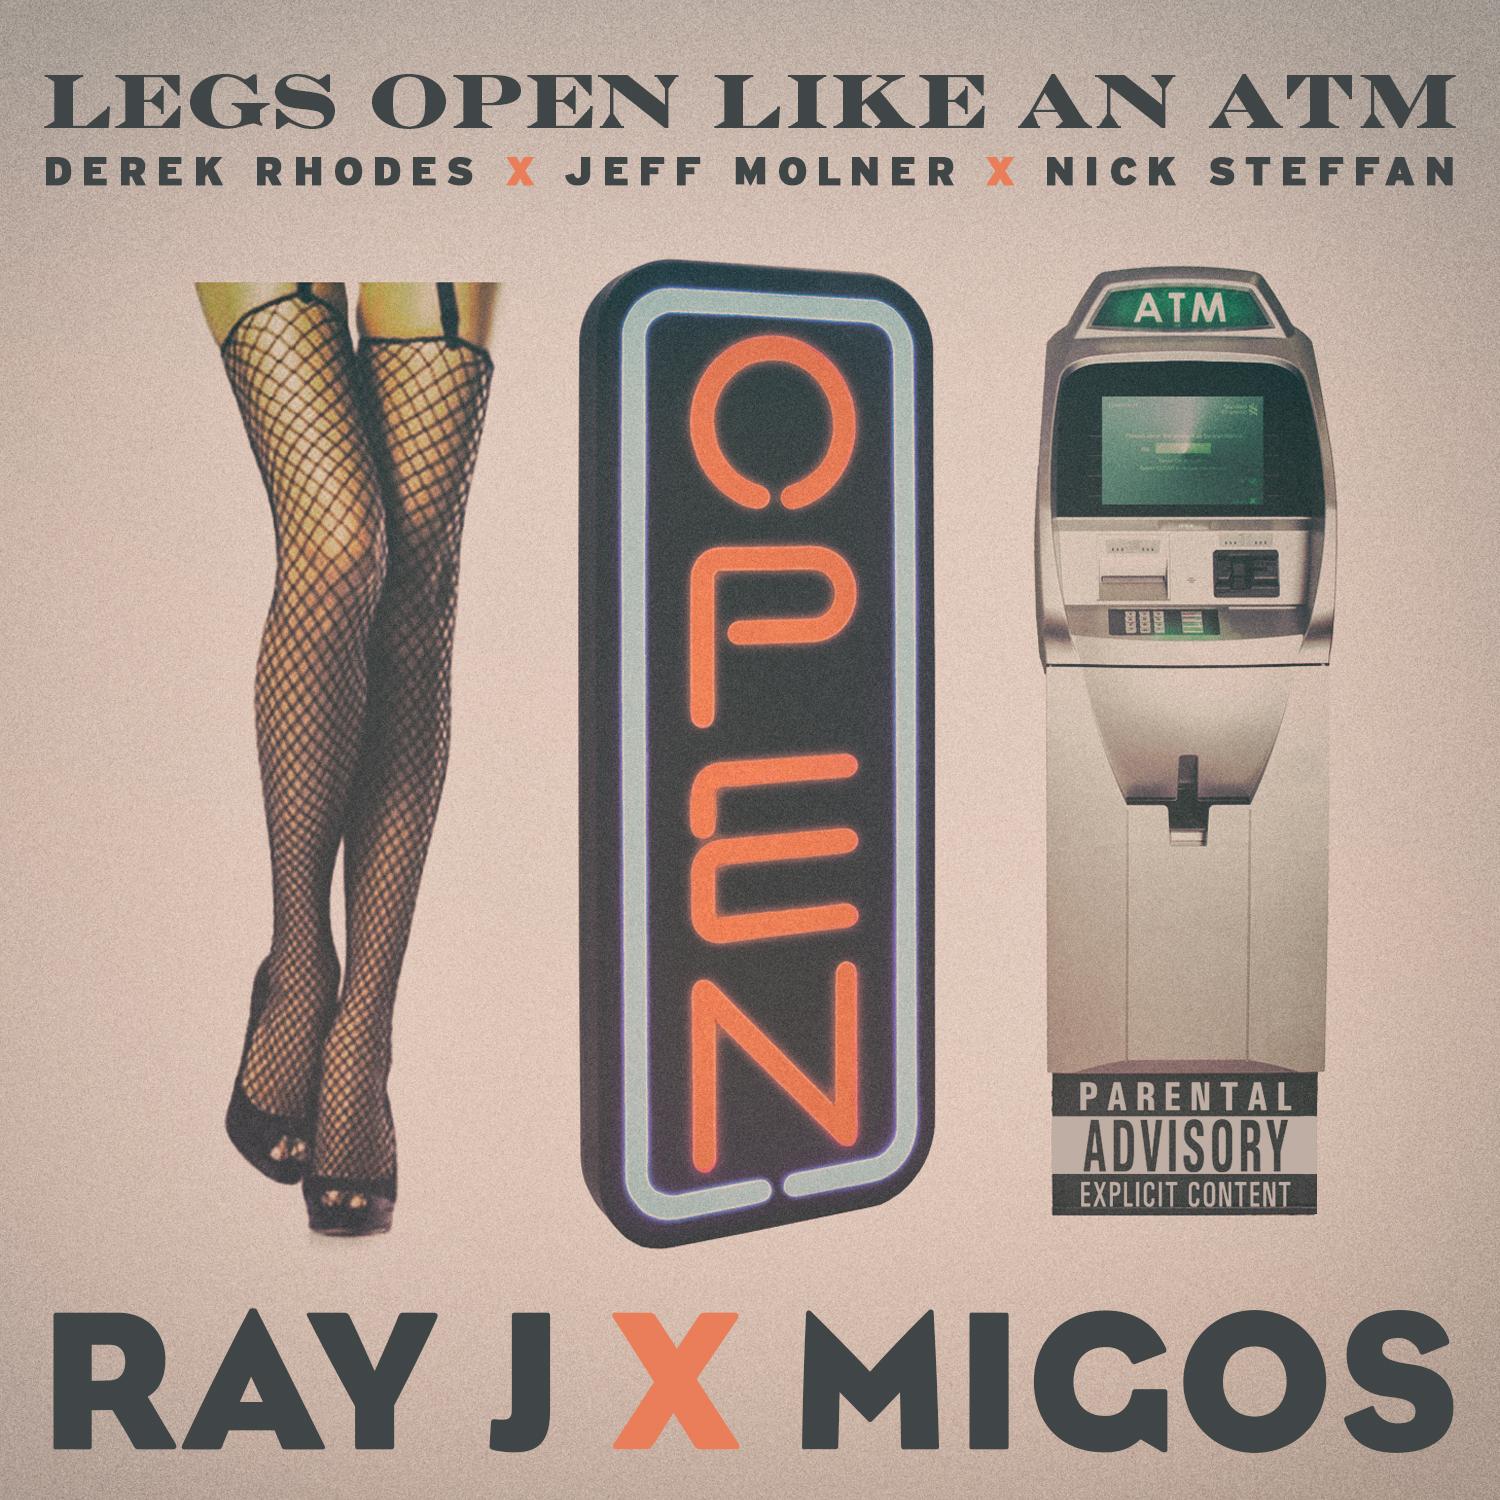 Legs Open Like An ATM